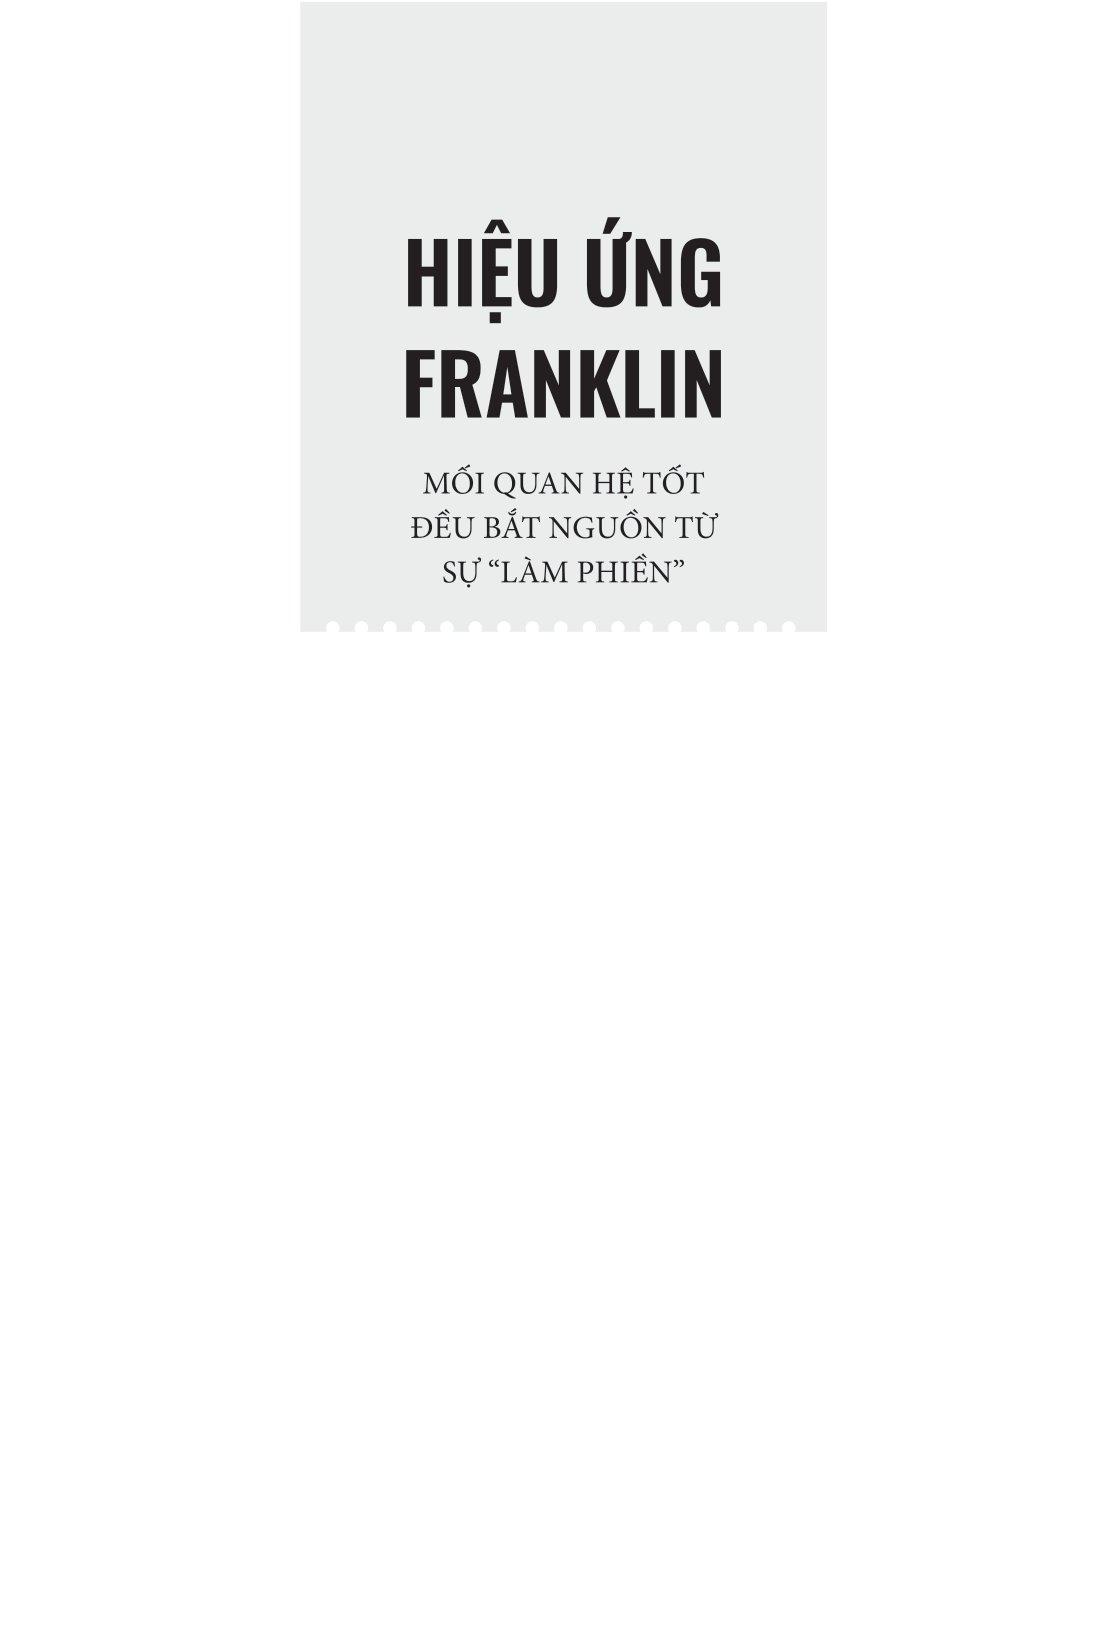 Hiệu Ứng Franklin - Mối Quan Hệ Tốt Đều Bắt Nguồn Tự Sự "Làm Phiền"